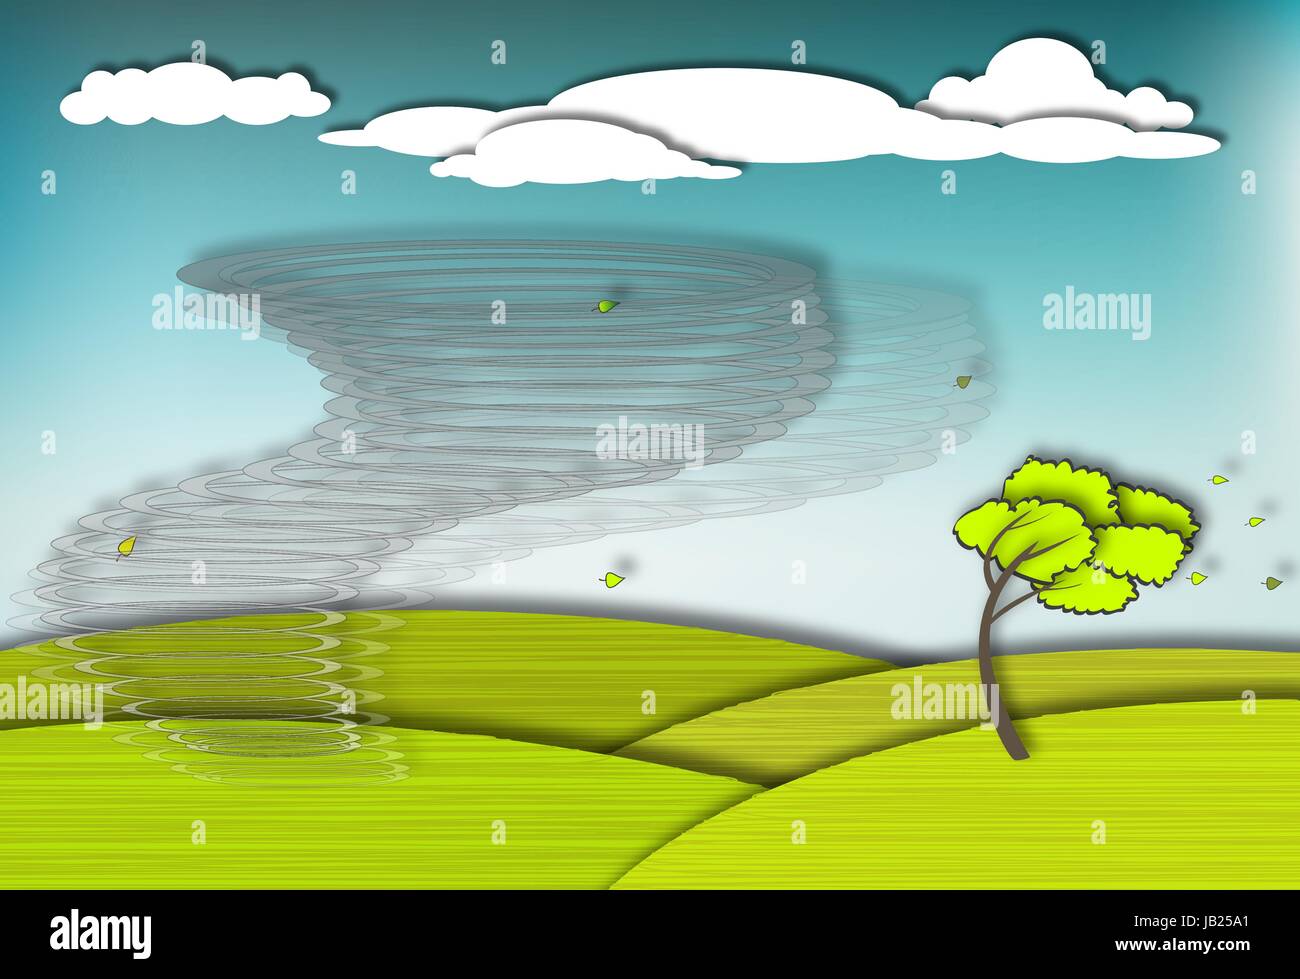 Scena drammatica con il tornado che spazza il campo, eps10 vettore Illustrazione Vettoriale